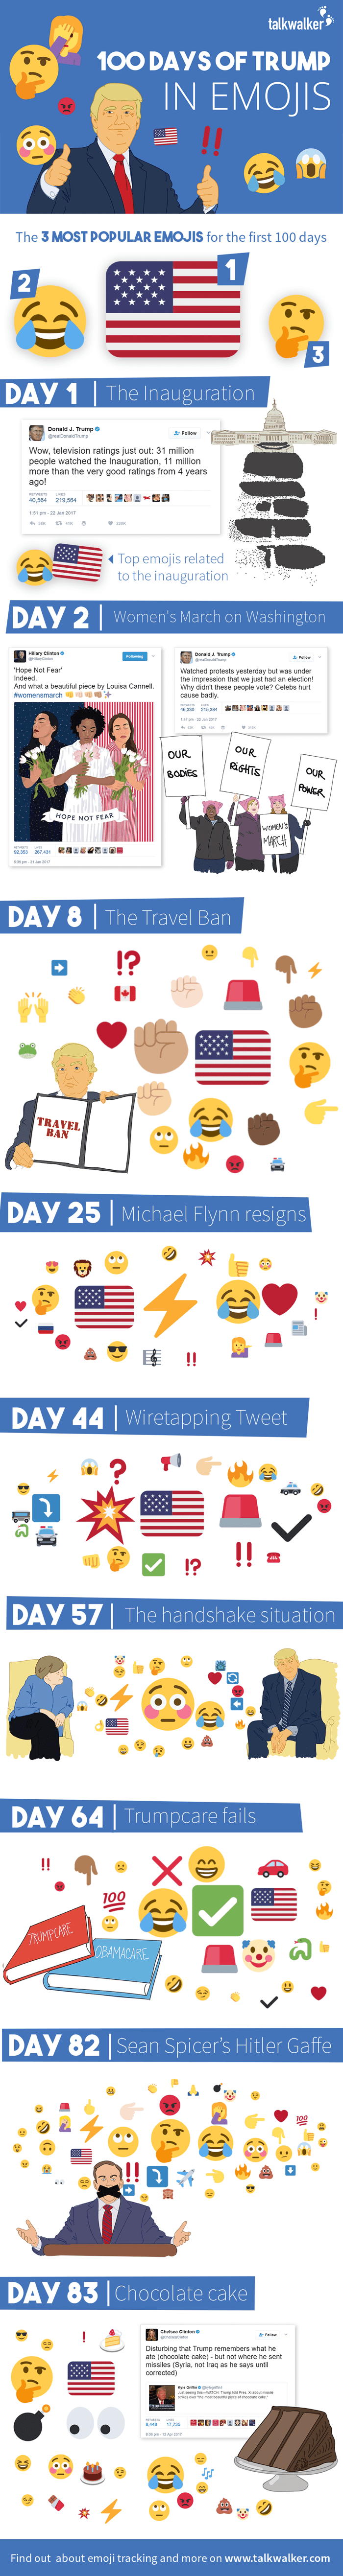 100 days top emojis